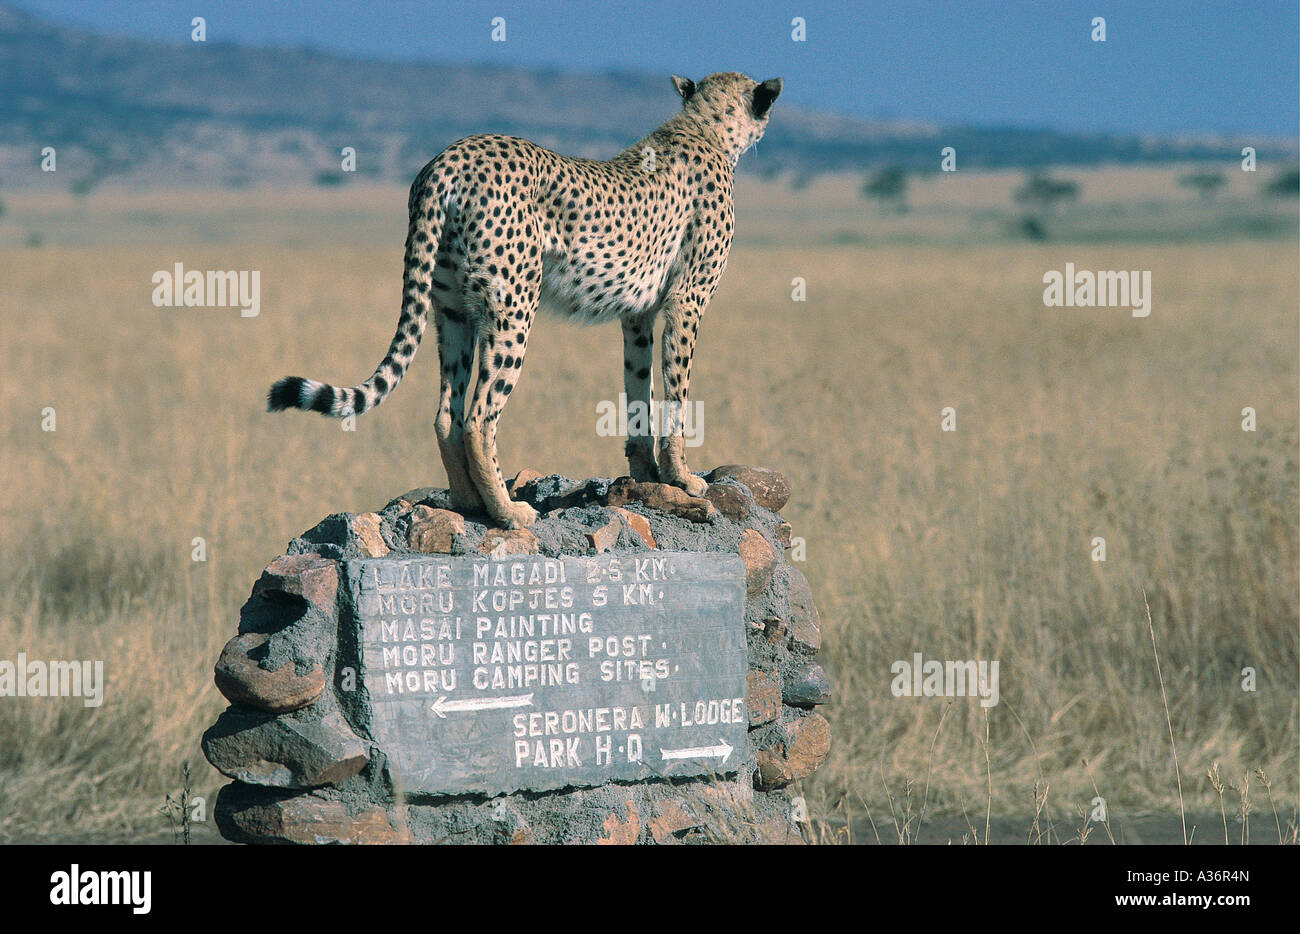 Cheetah de pie en la parte superior de la señal de carretera en el Parque Nacional de Serengeti, Tanzania Foto de stock